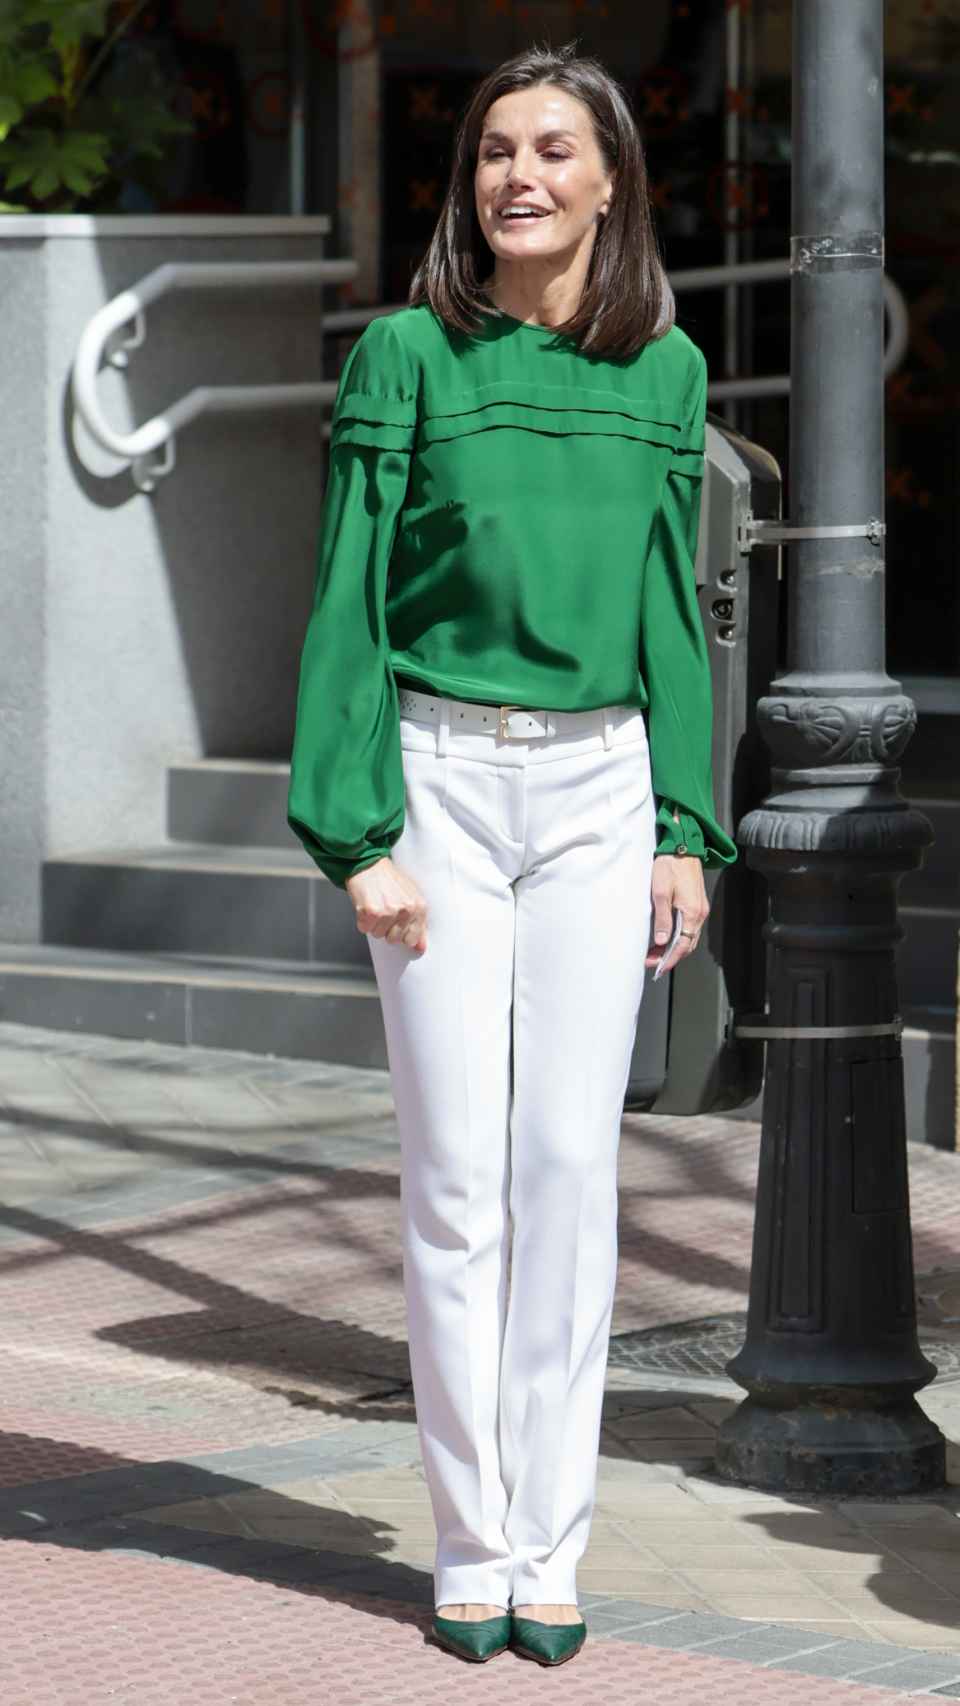 Letizia con el look de blusa verde y zapatos a juego con pantalones blancos.